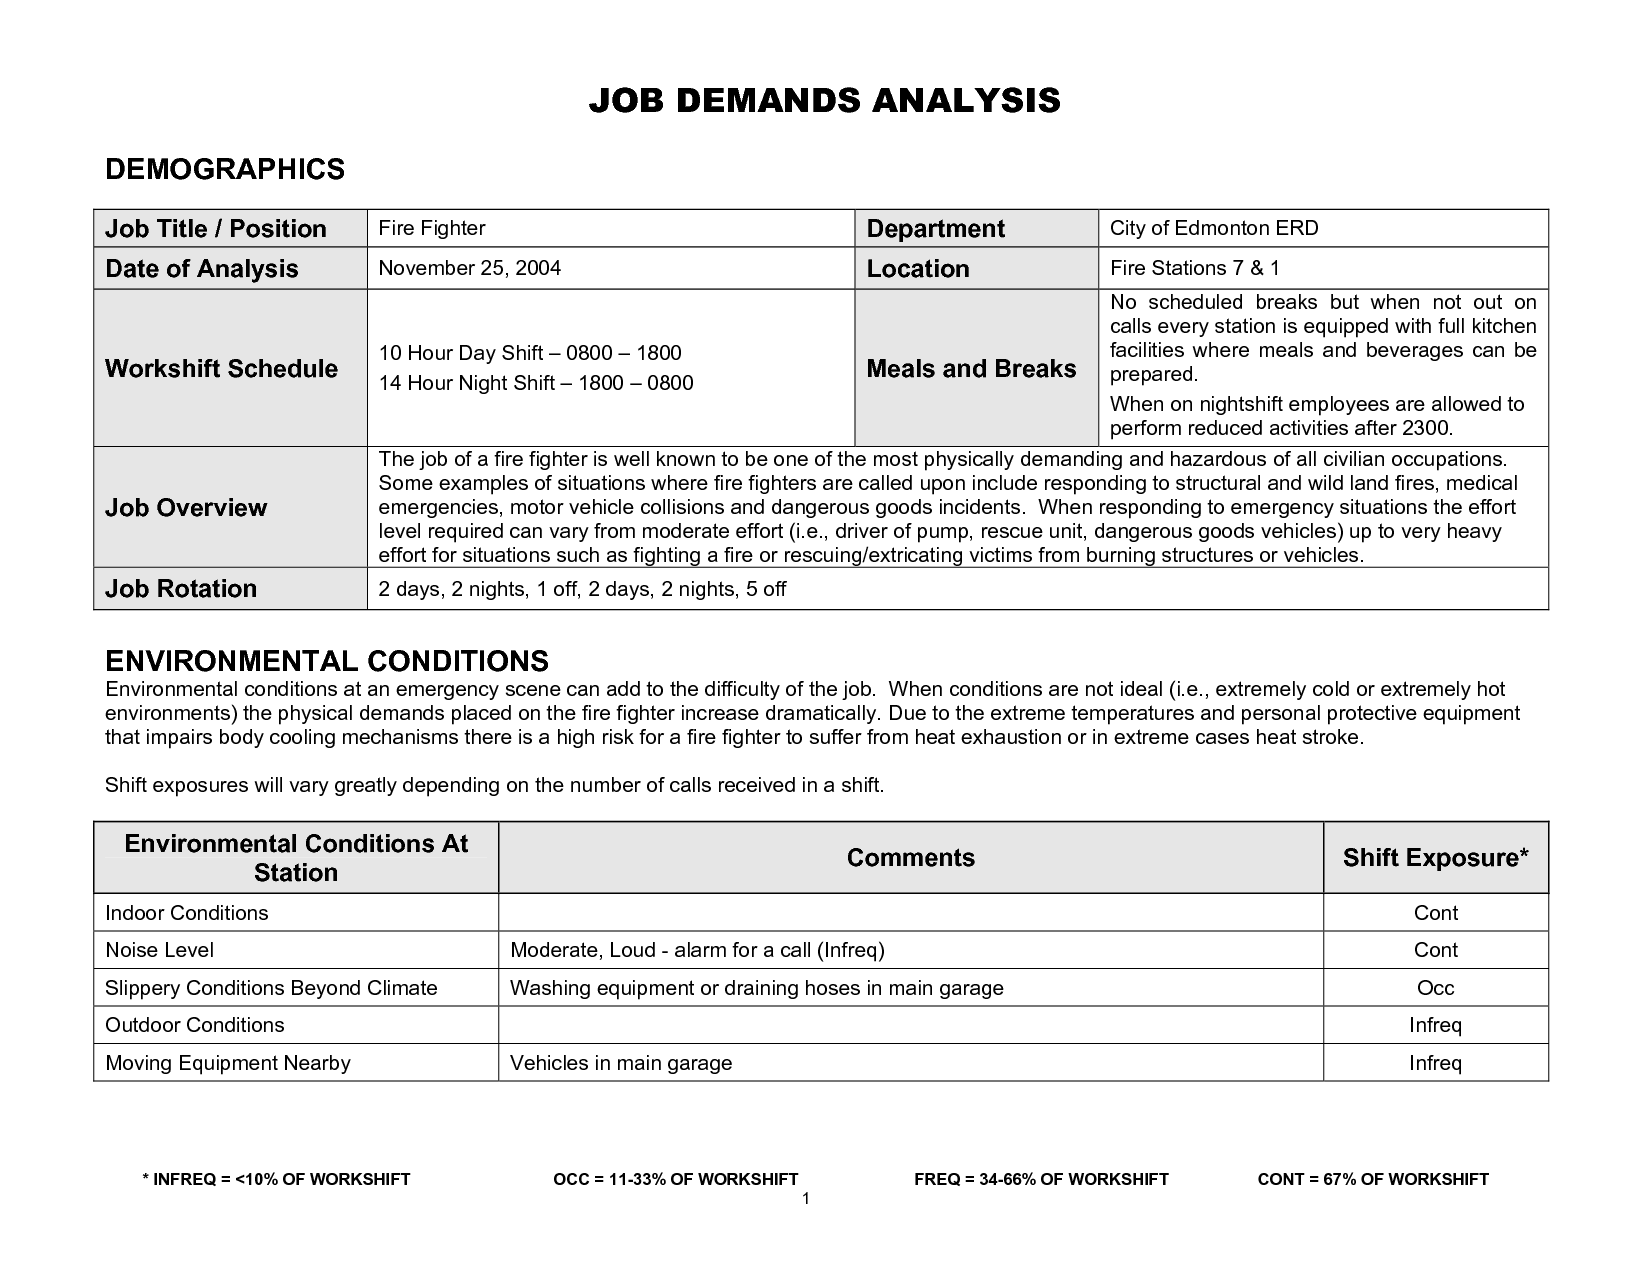 Job Demands Analysis Template Image